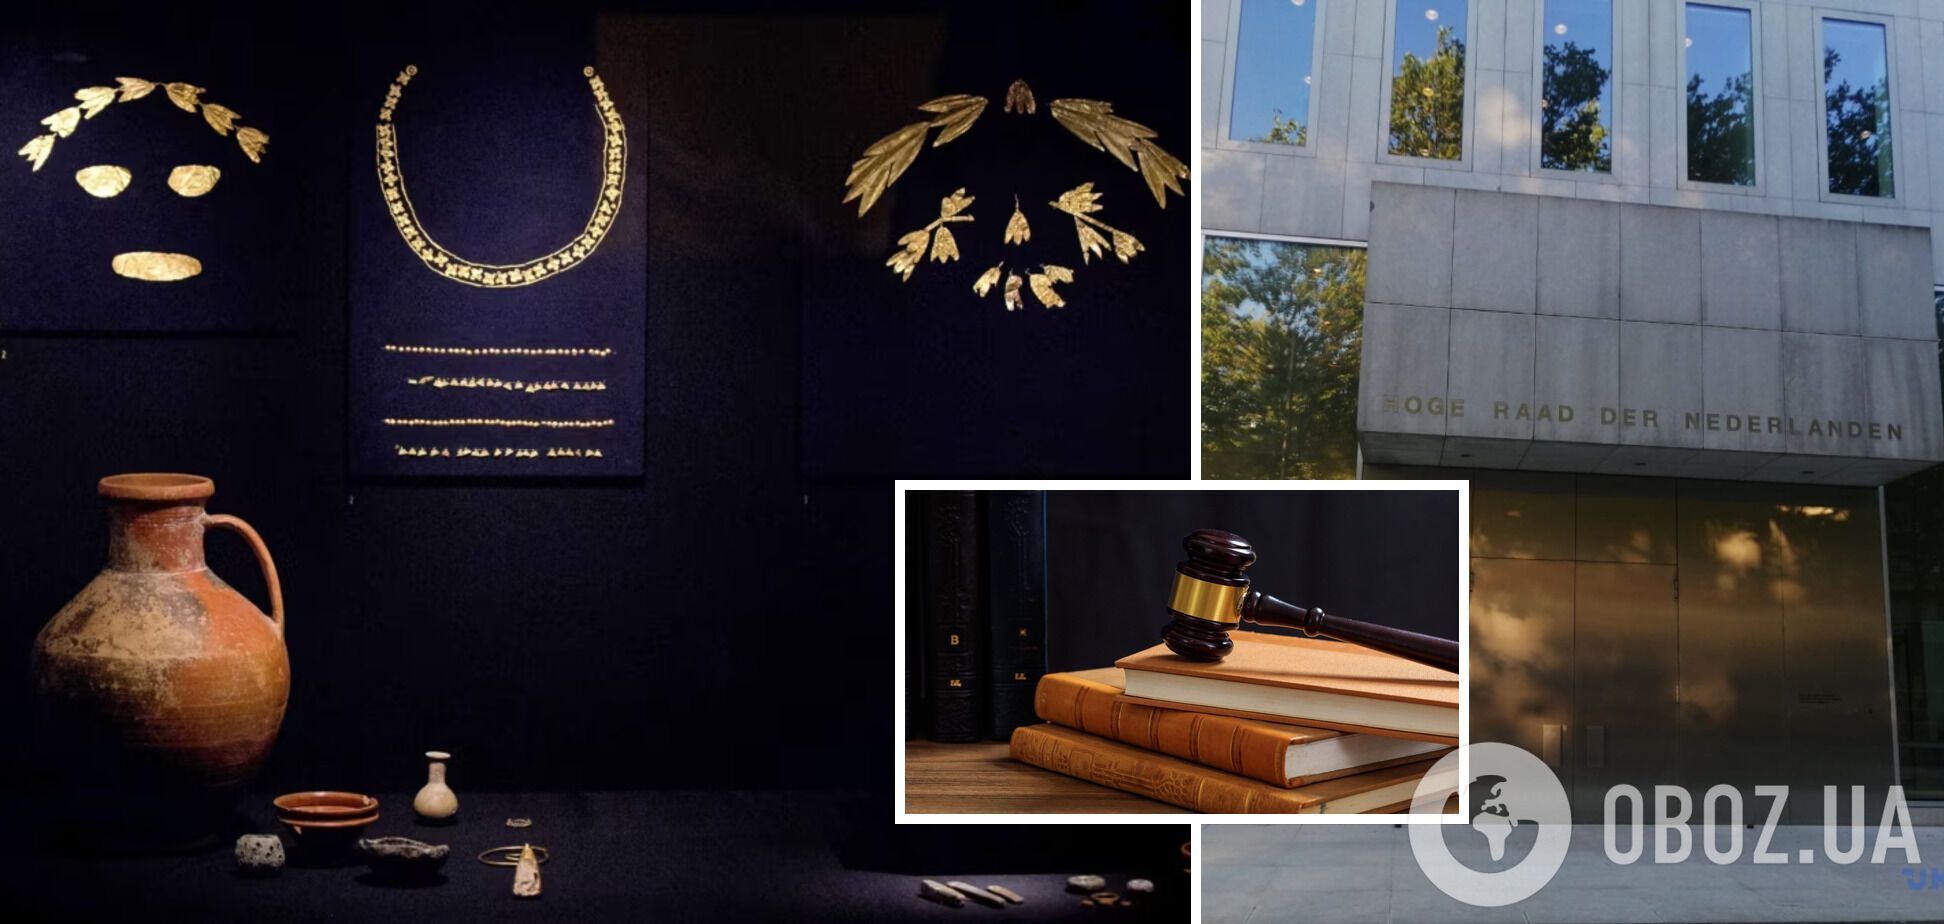 "Скіфське золото" має бути повернуто Україні: Верховний суд Нідерландів поставив крапку у справі 